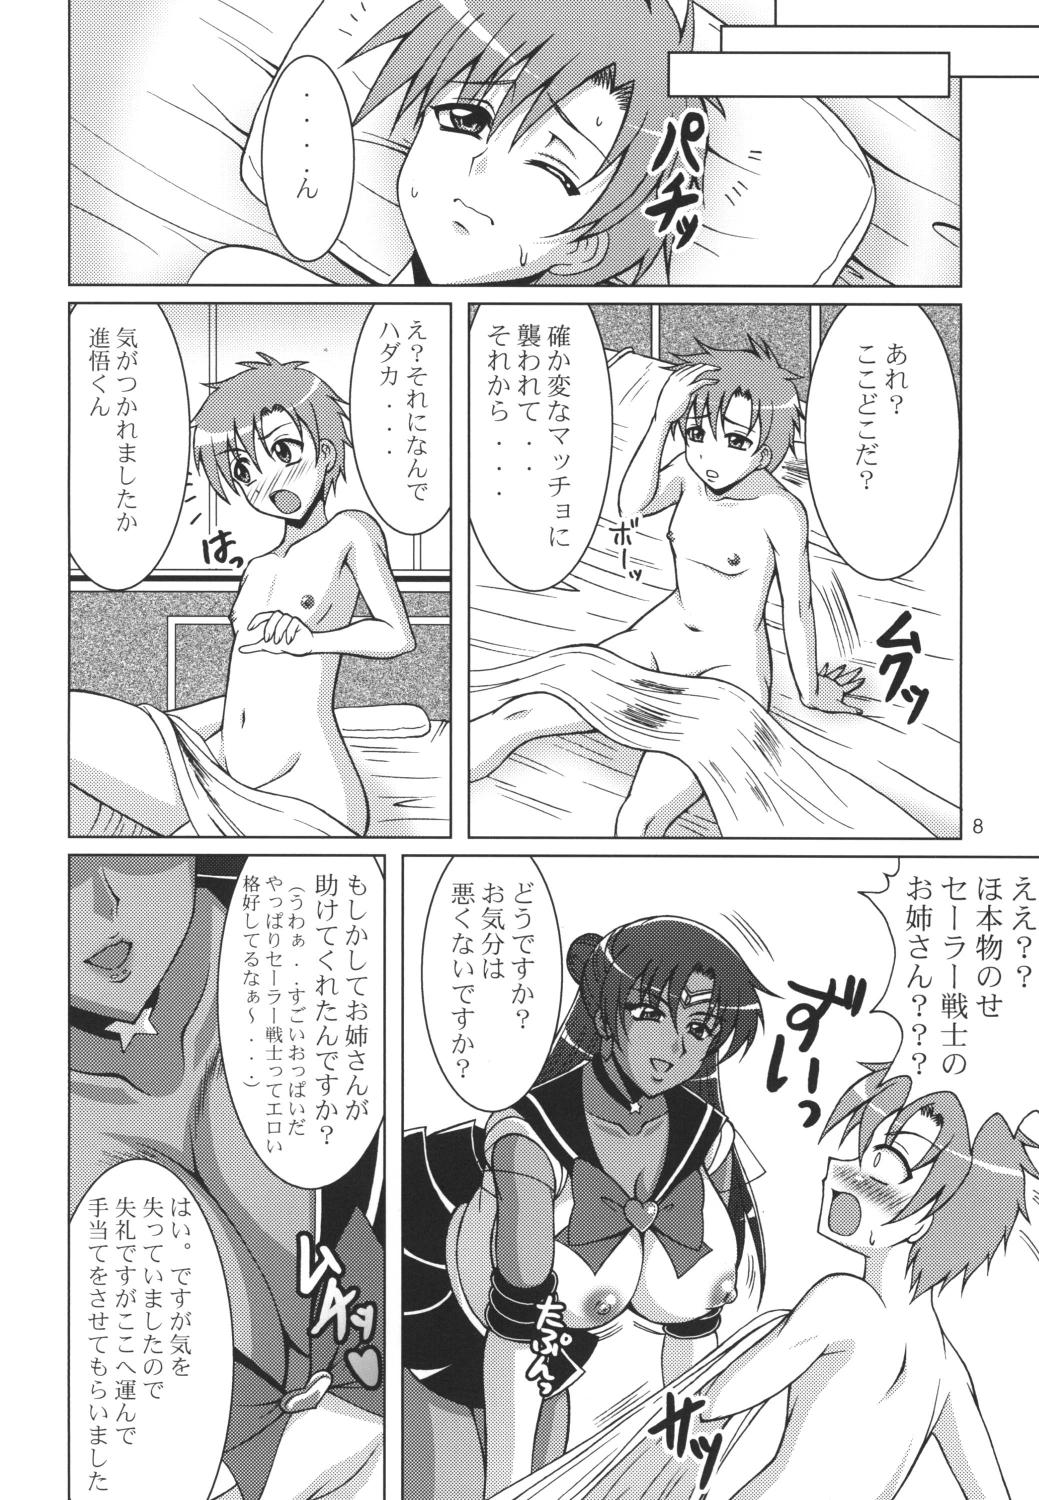 Casado Rojou no Meiousei - Sailor moon Sister - Page 7